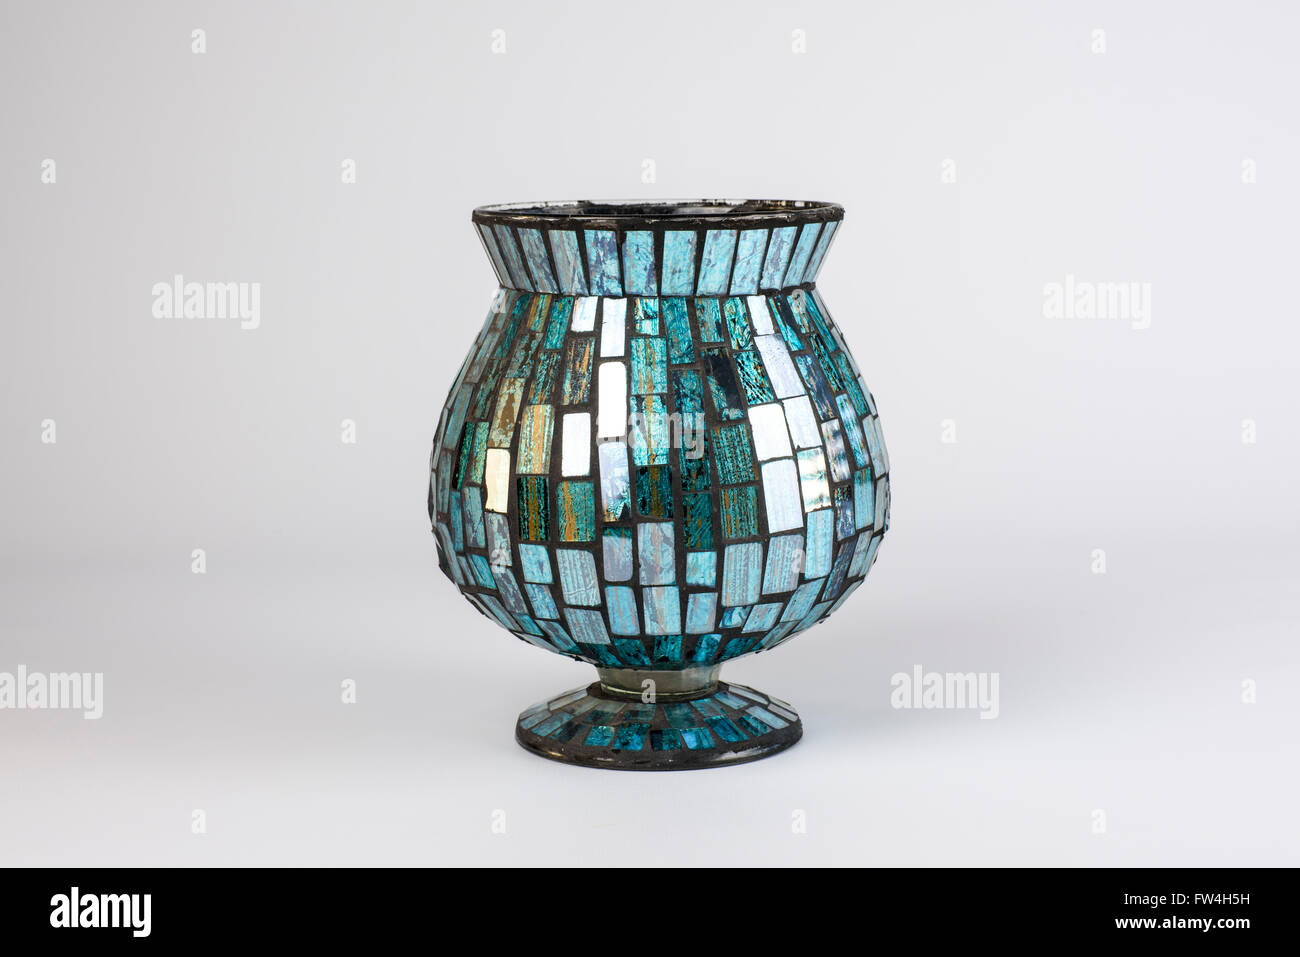 Glas-Vase in blau Stücke aus Glas wie ein Mosaik, vor einem weißen  Hintergrund bedeckt Stockfotografie - Alamy